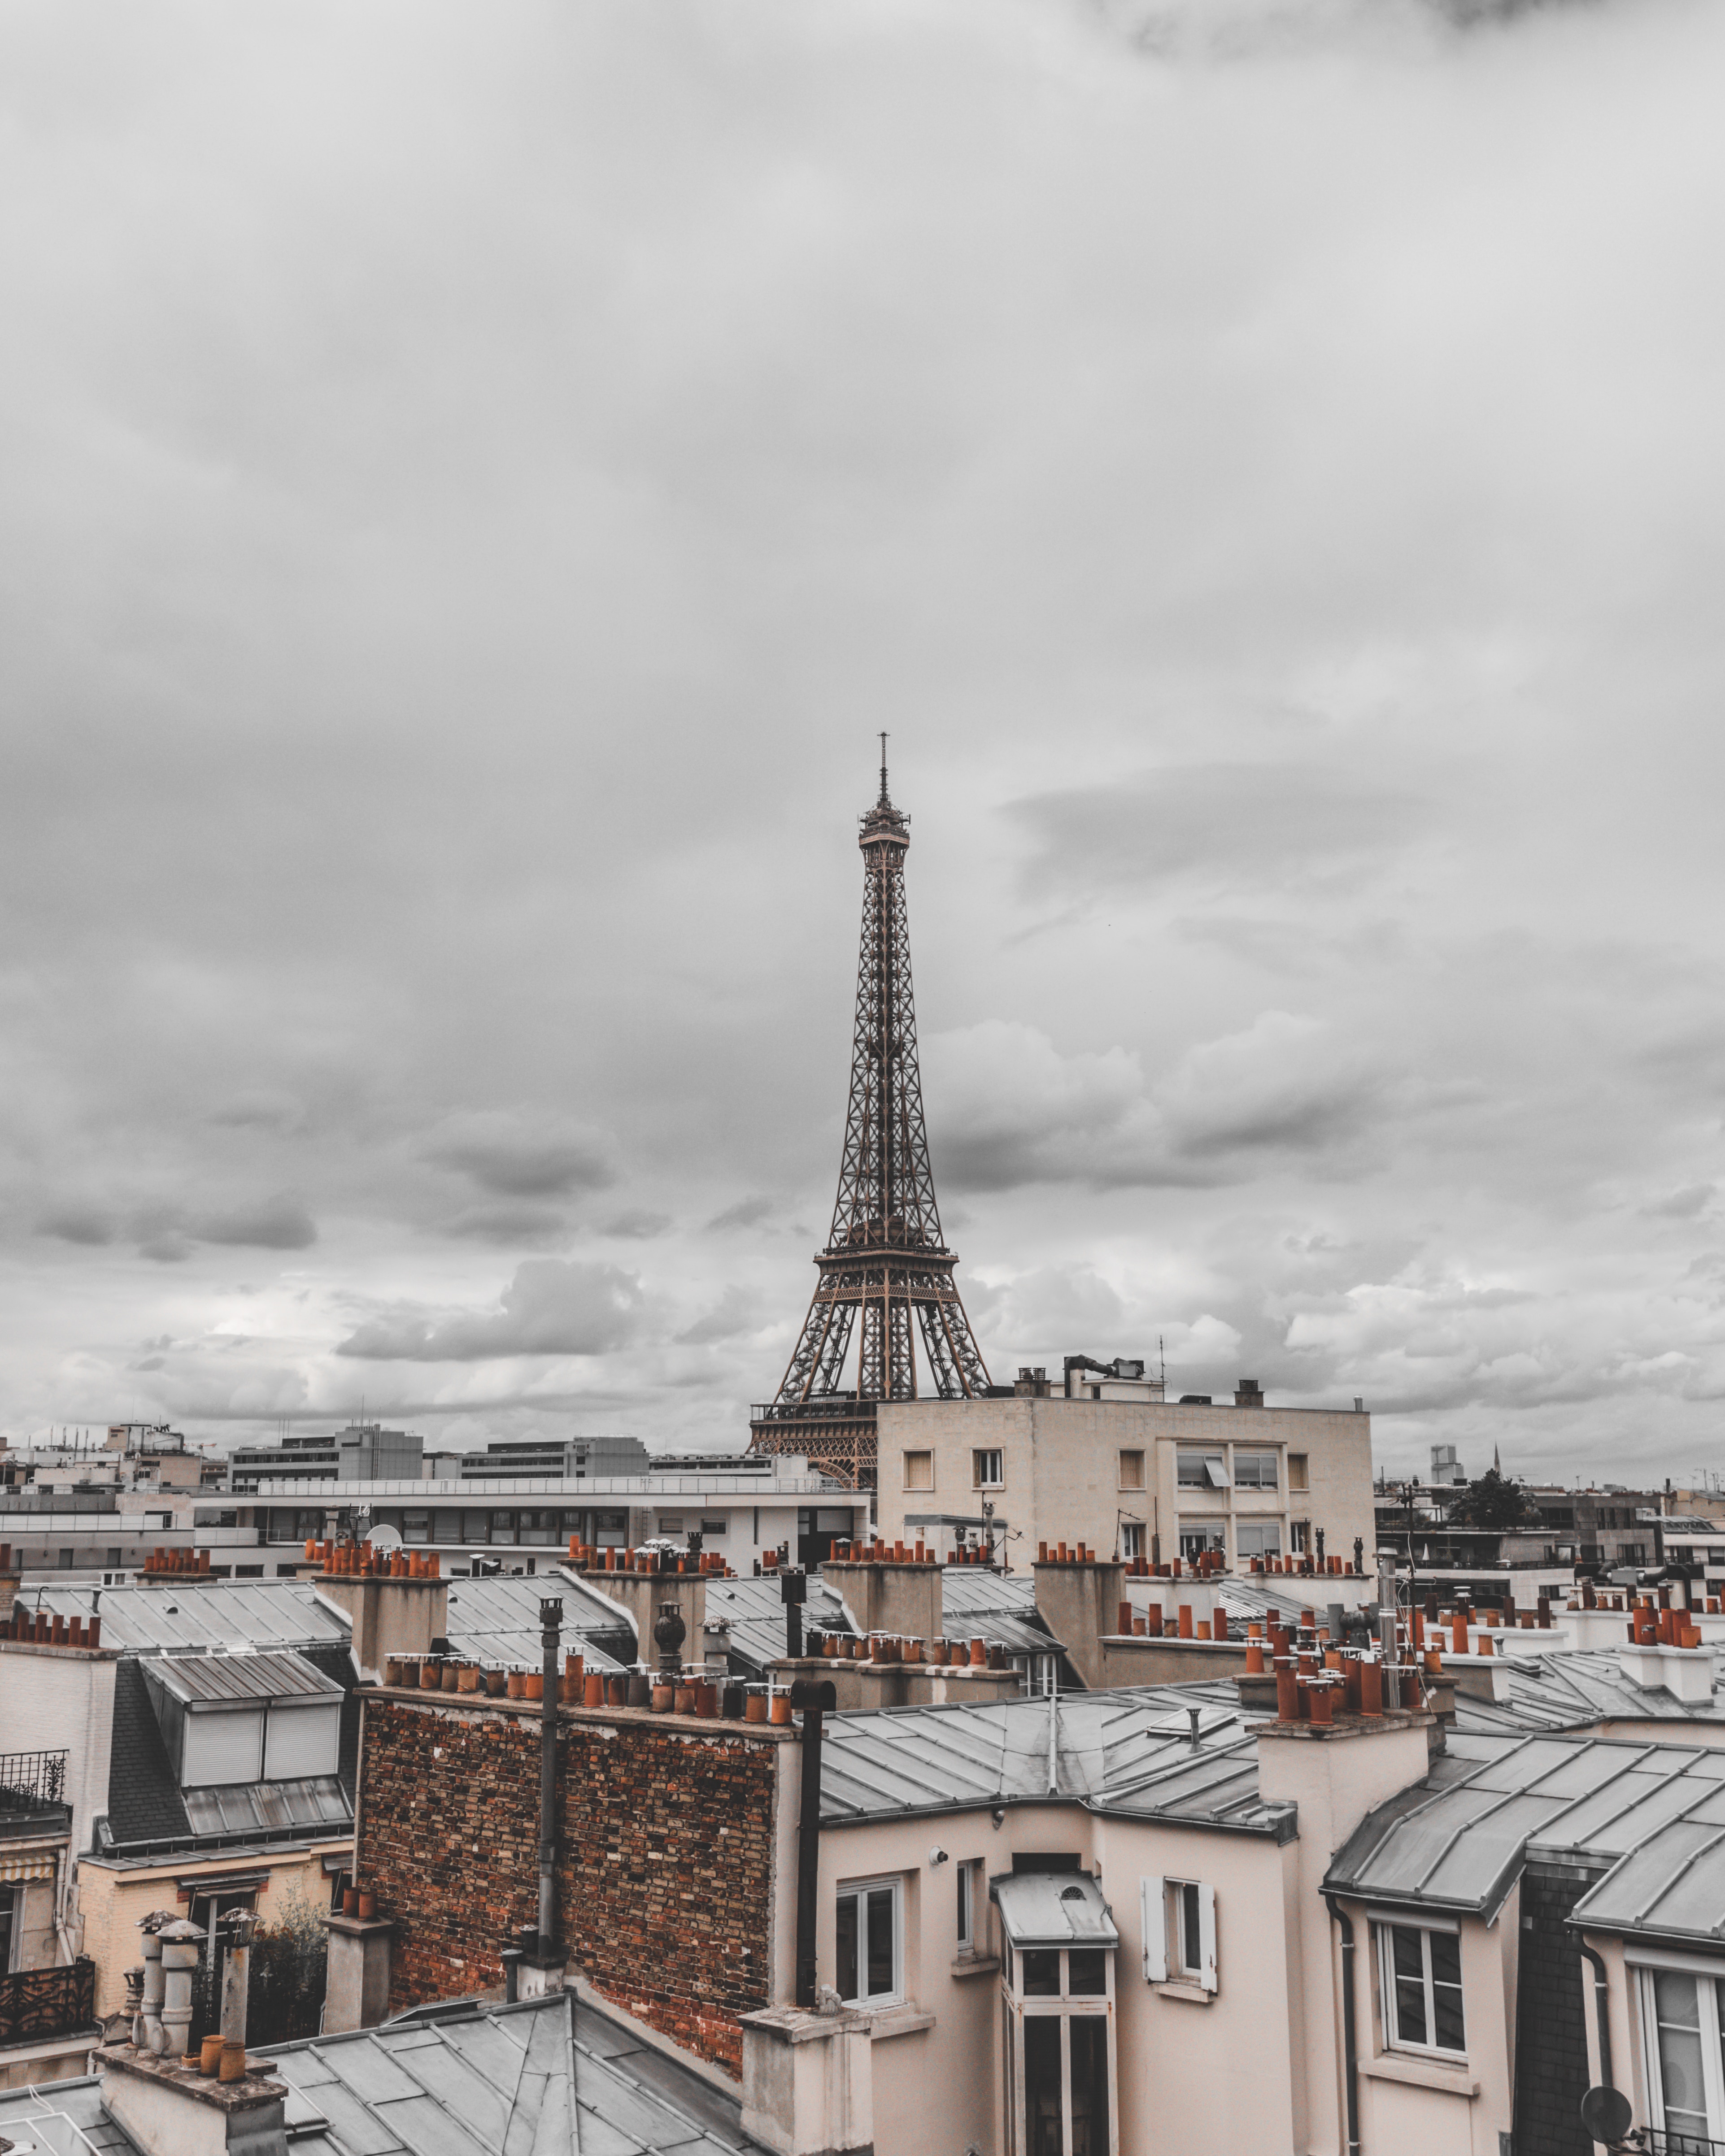 Toits de Paris avec la Tour Eiffel au fond - Photo by paul wallez on Unsplash